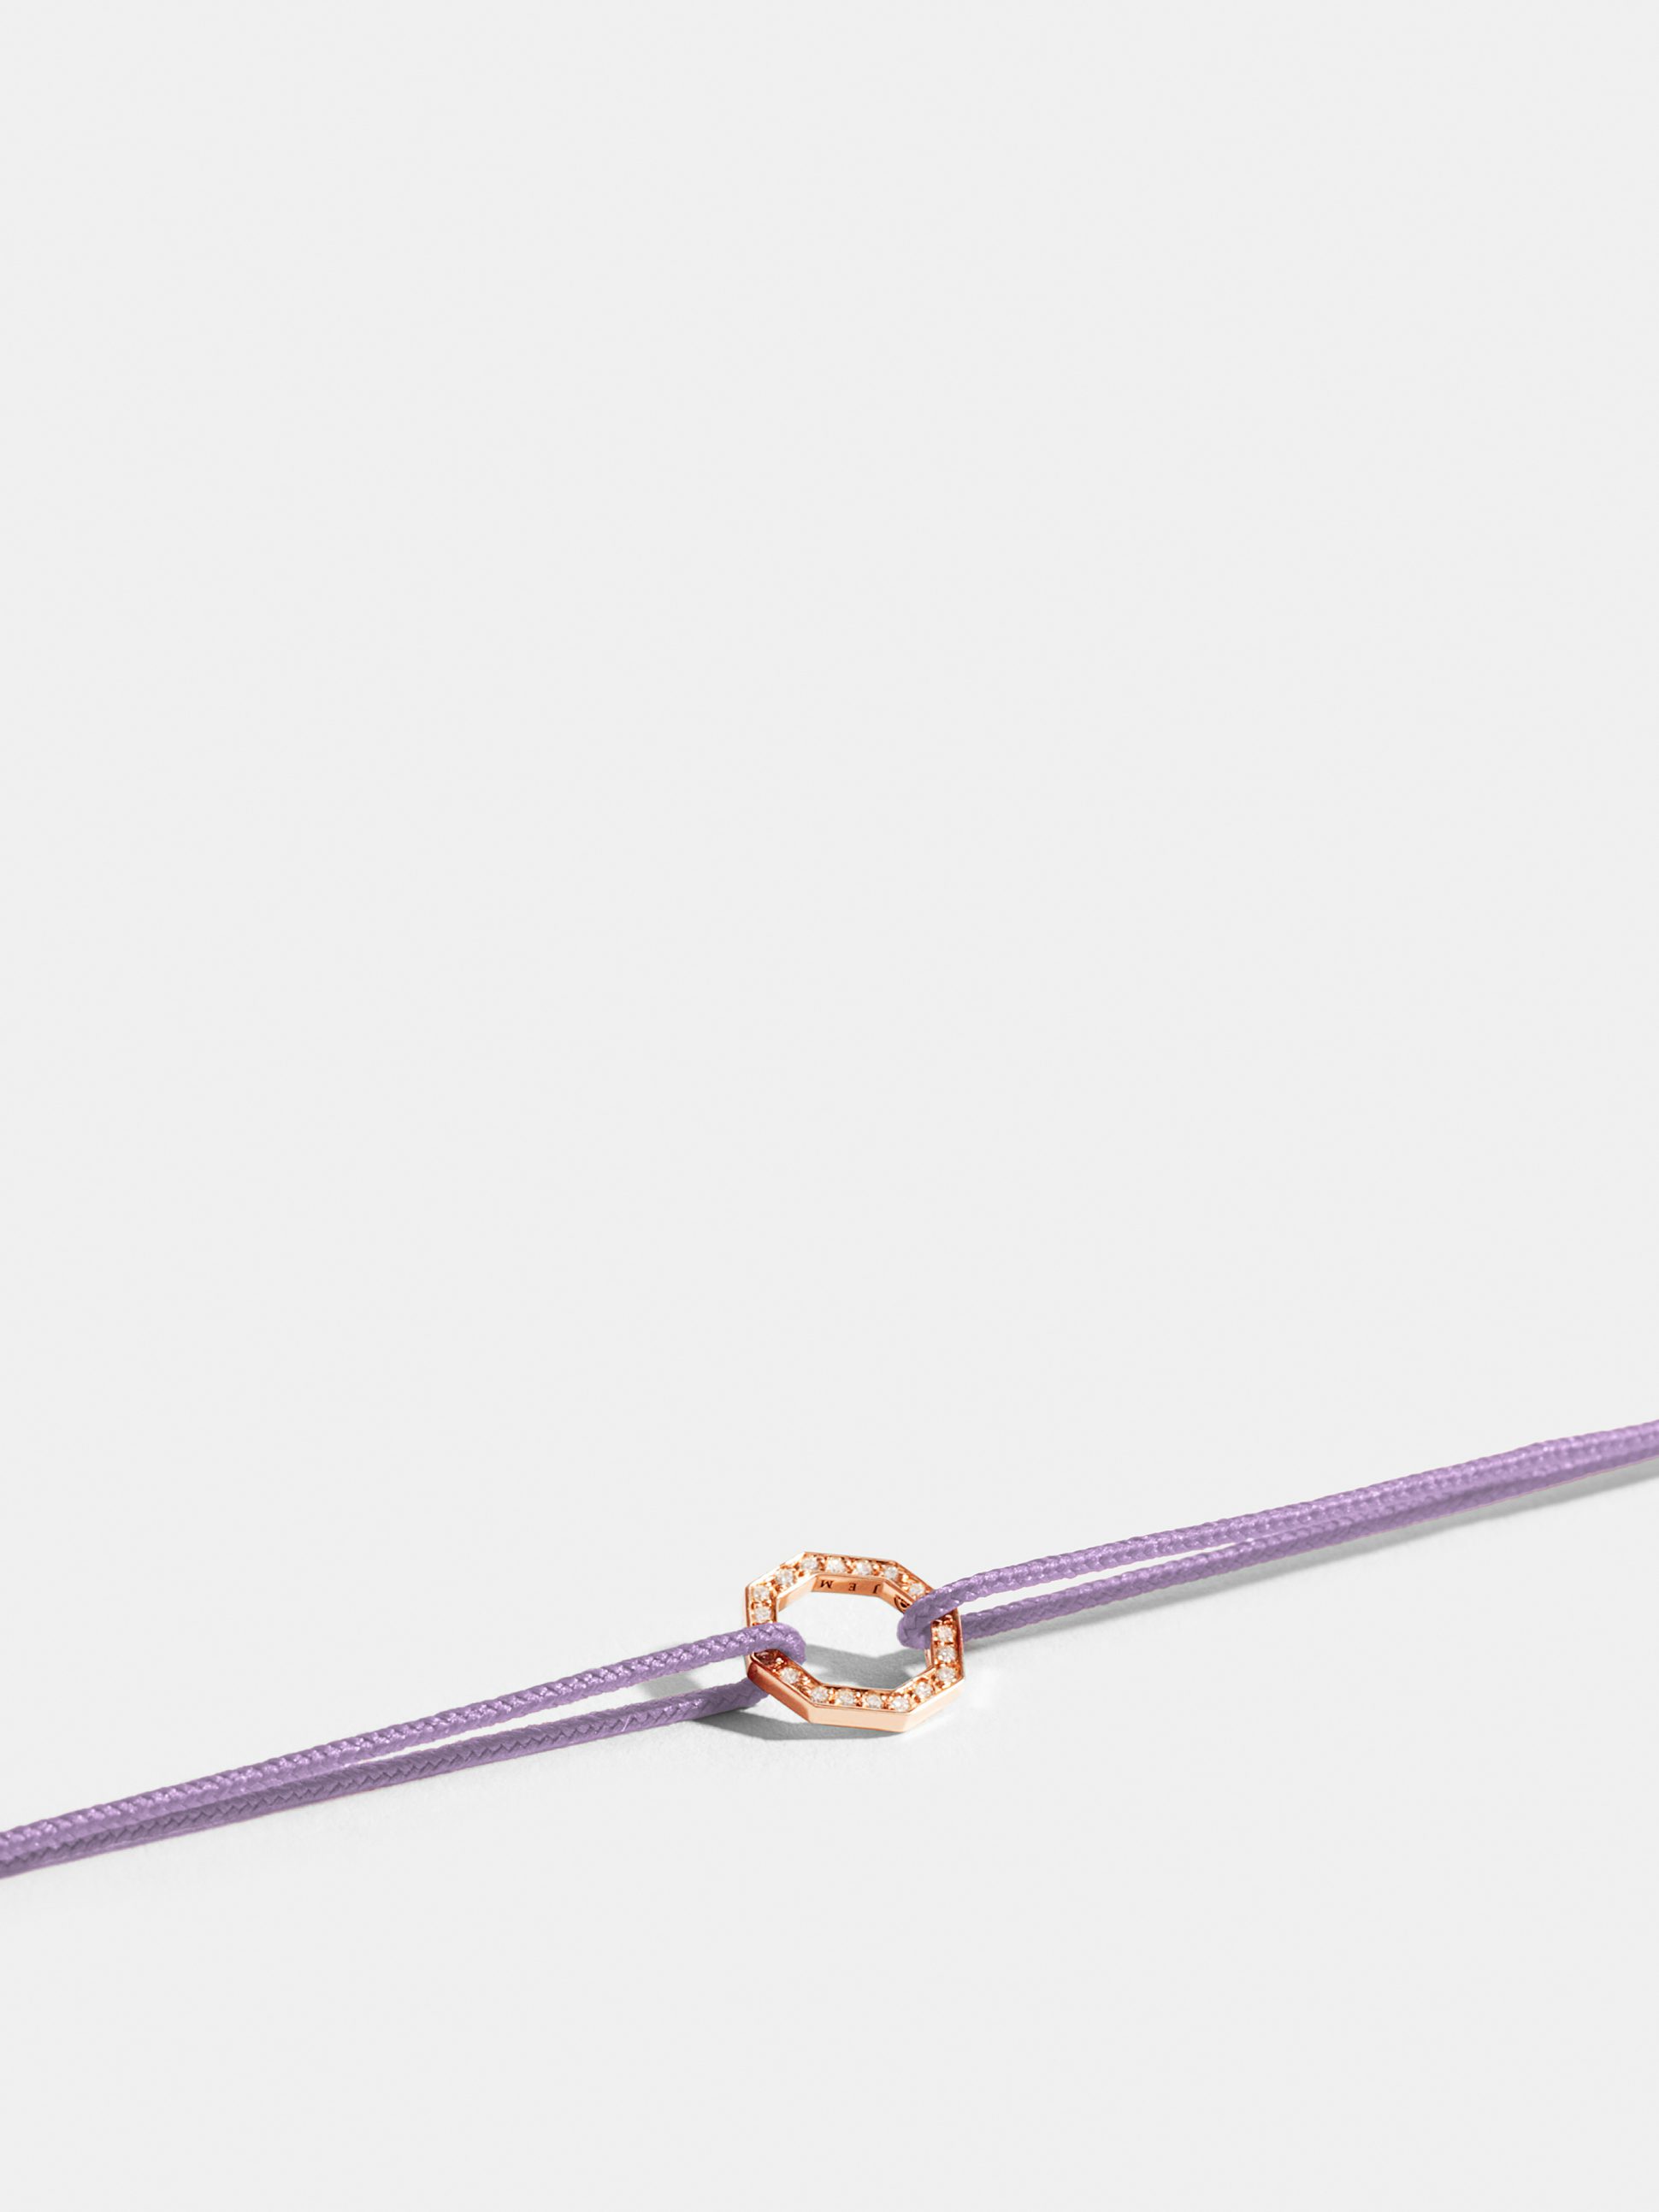 Motif Octogone en Or rose éthique 18 carats certifié Fairmined et pavé de diamants de synthèse, sur cordon violet lilas.